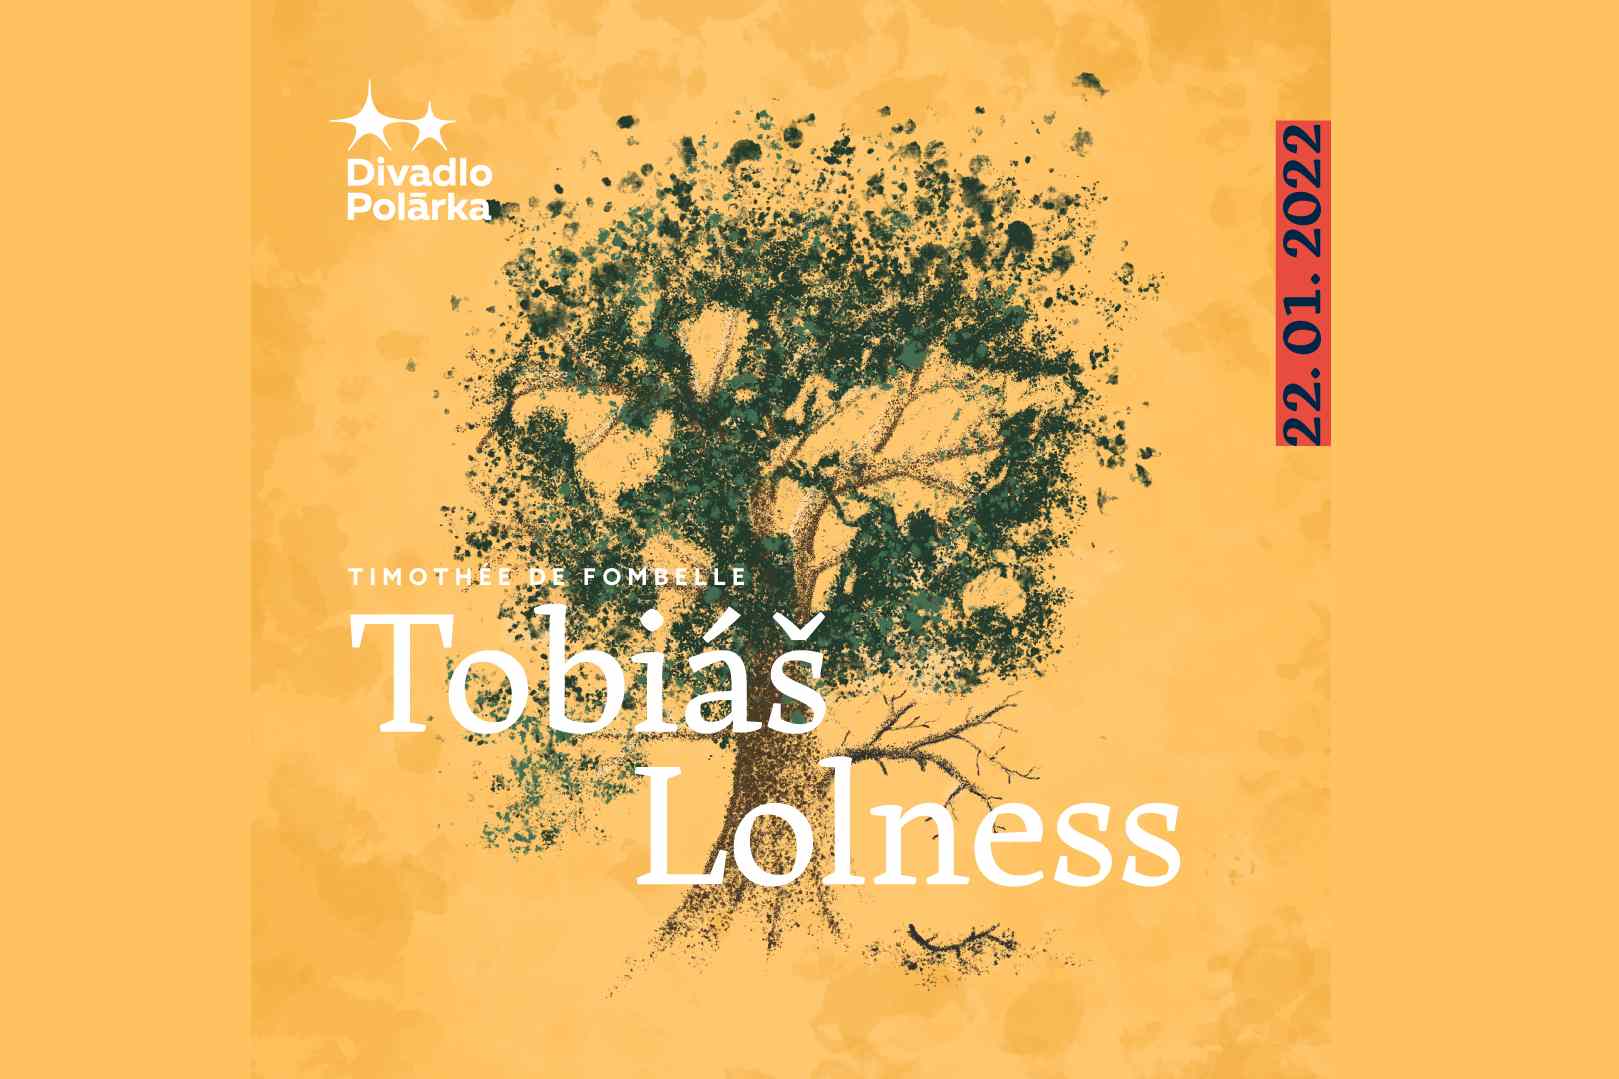 Divadlo Polárka Brno / Tobiáš Lolness